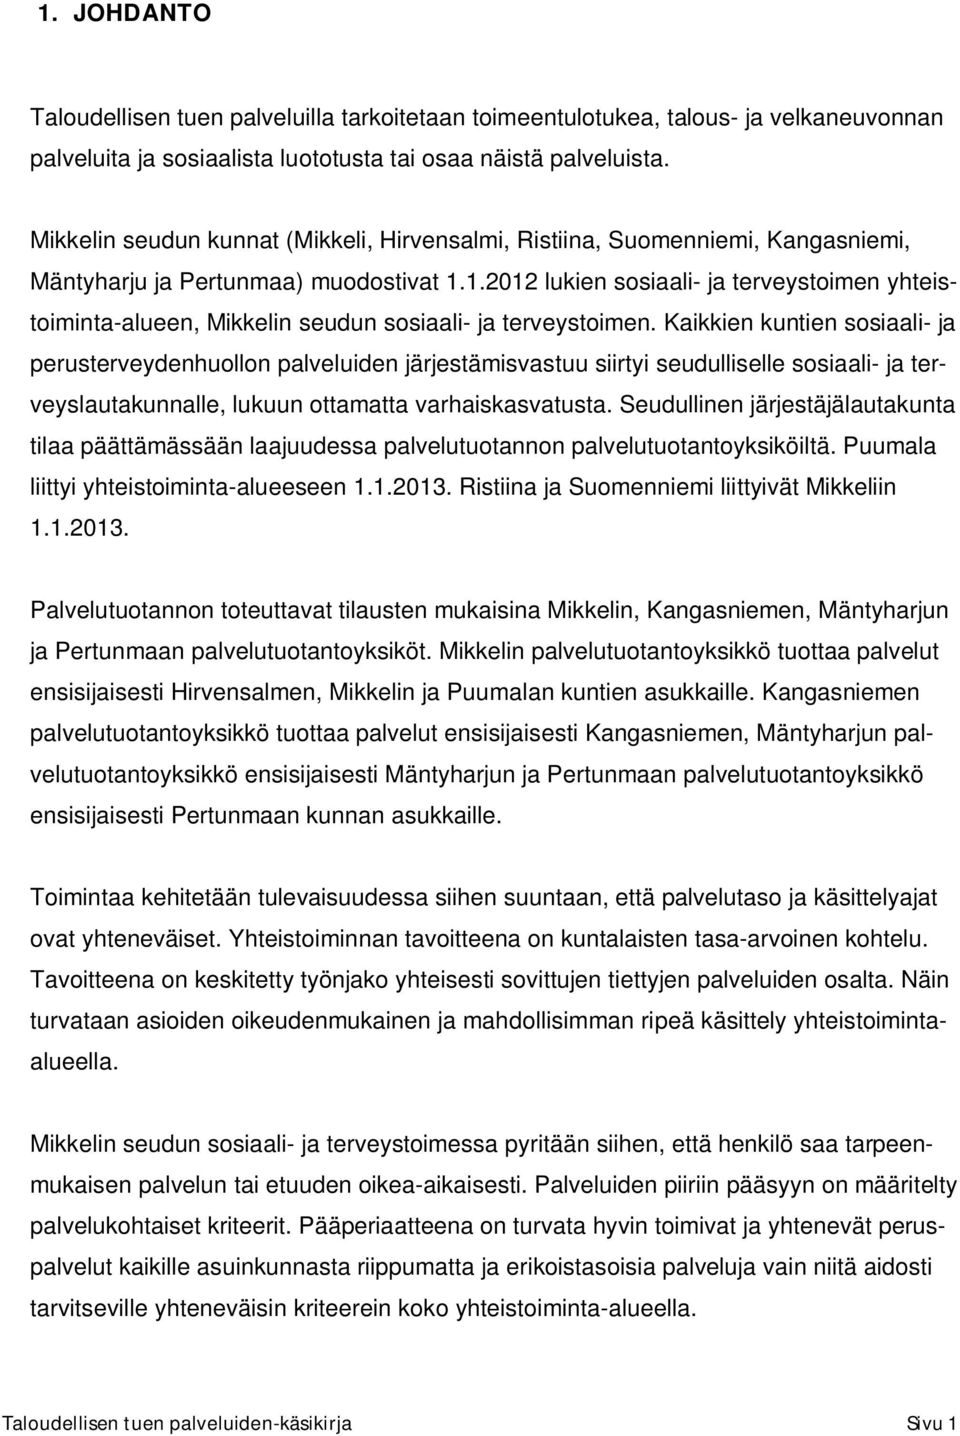 1.2012 lukien sosiaali- ja terveystoimen yhteistoiminta-alueen, Mikkelin seudun sosiaali- ja terveystoimen.